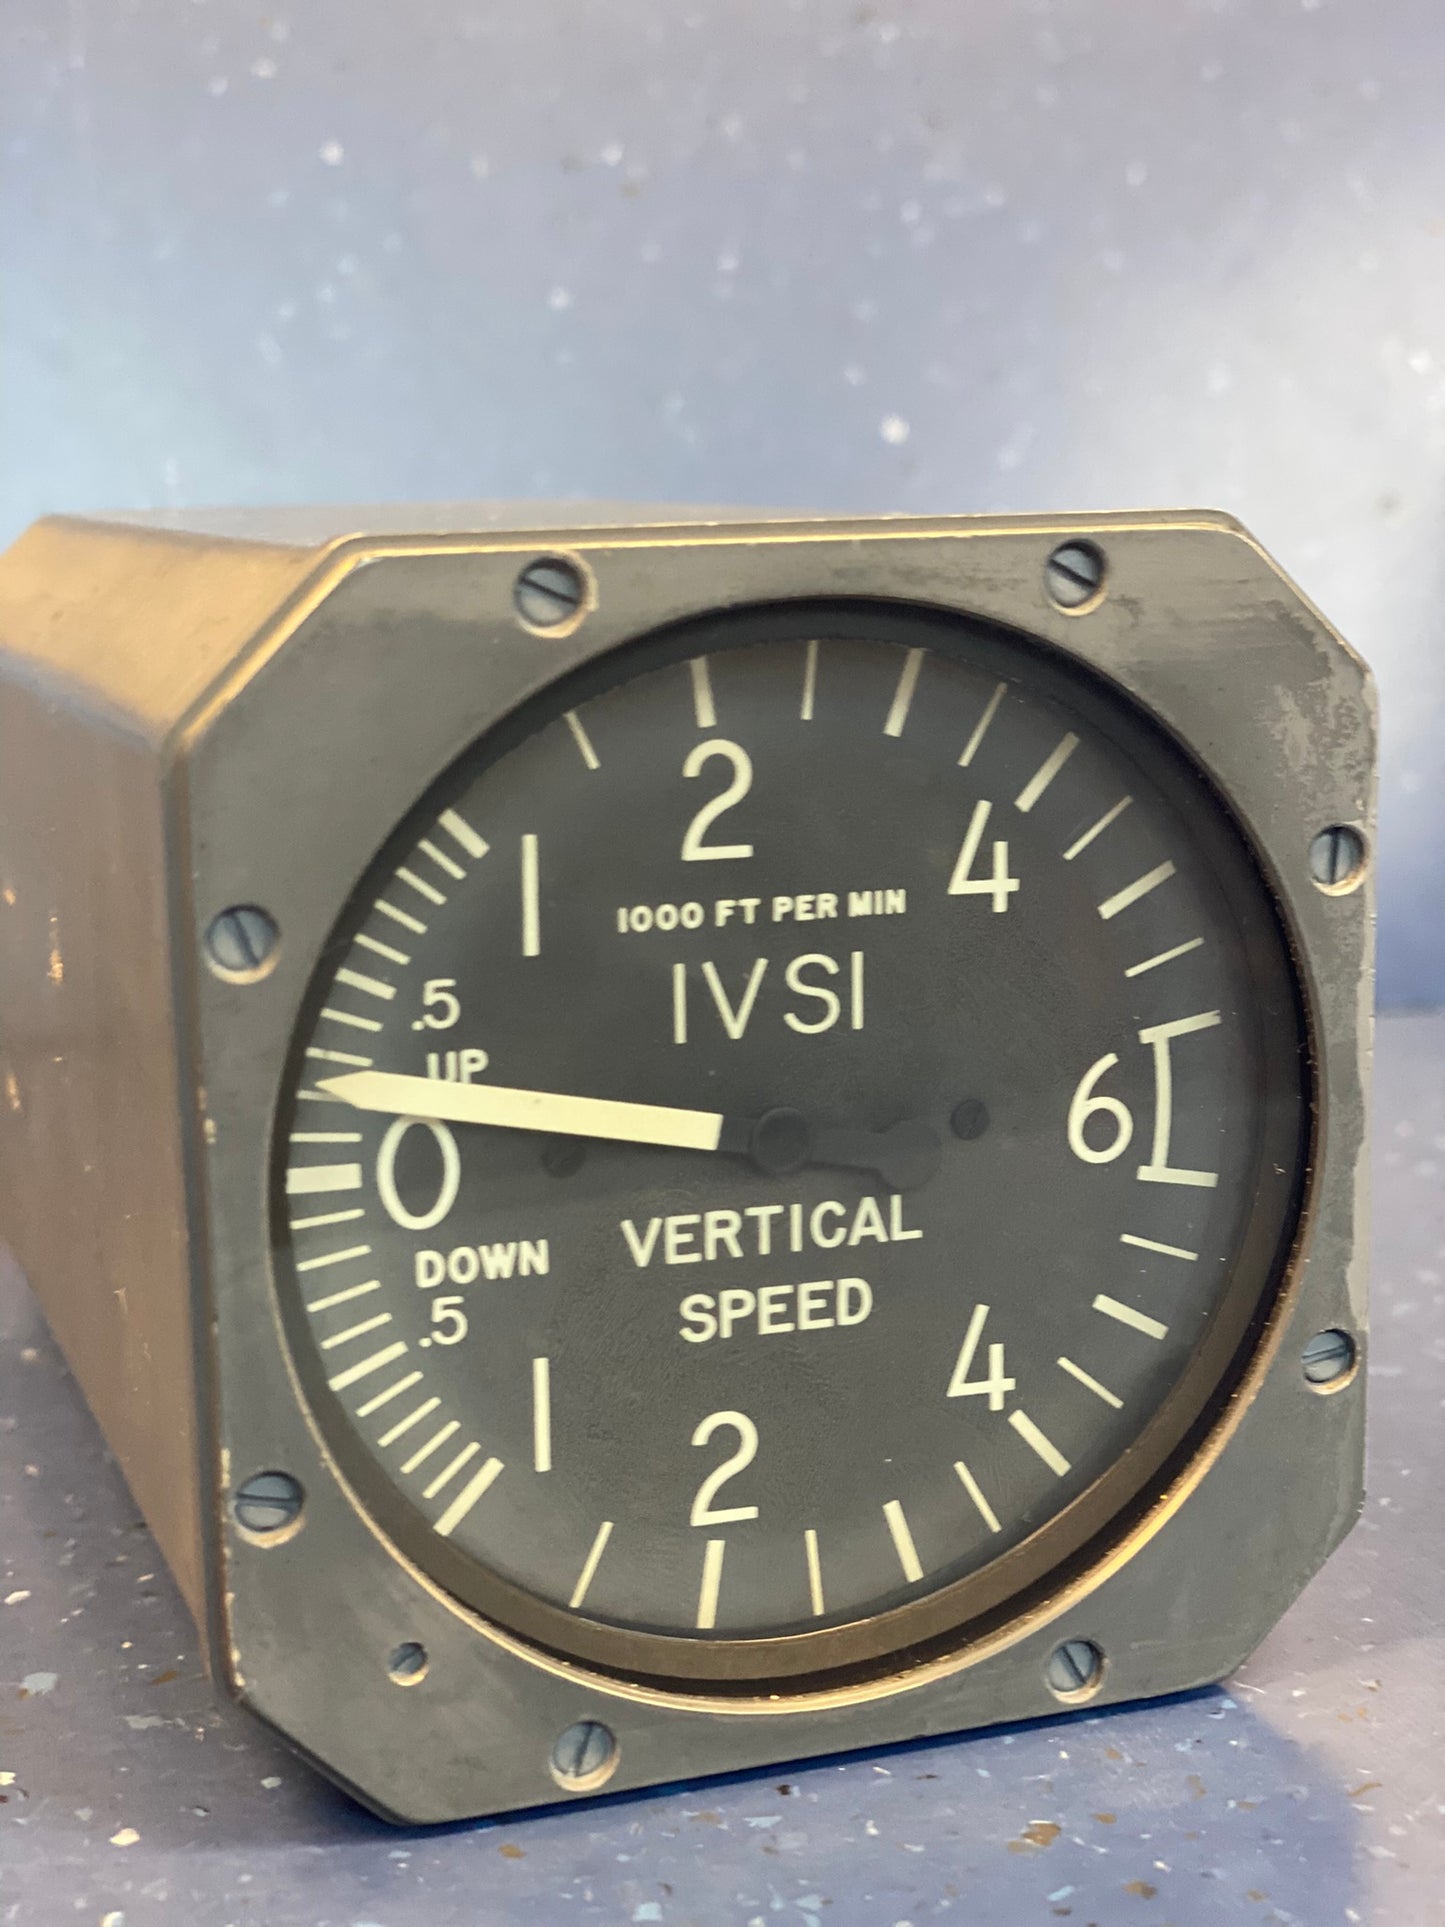 Classic 1990’s Vertical Speed Indicator